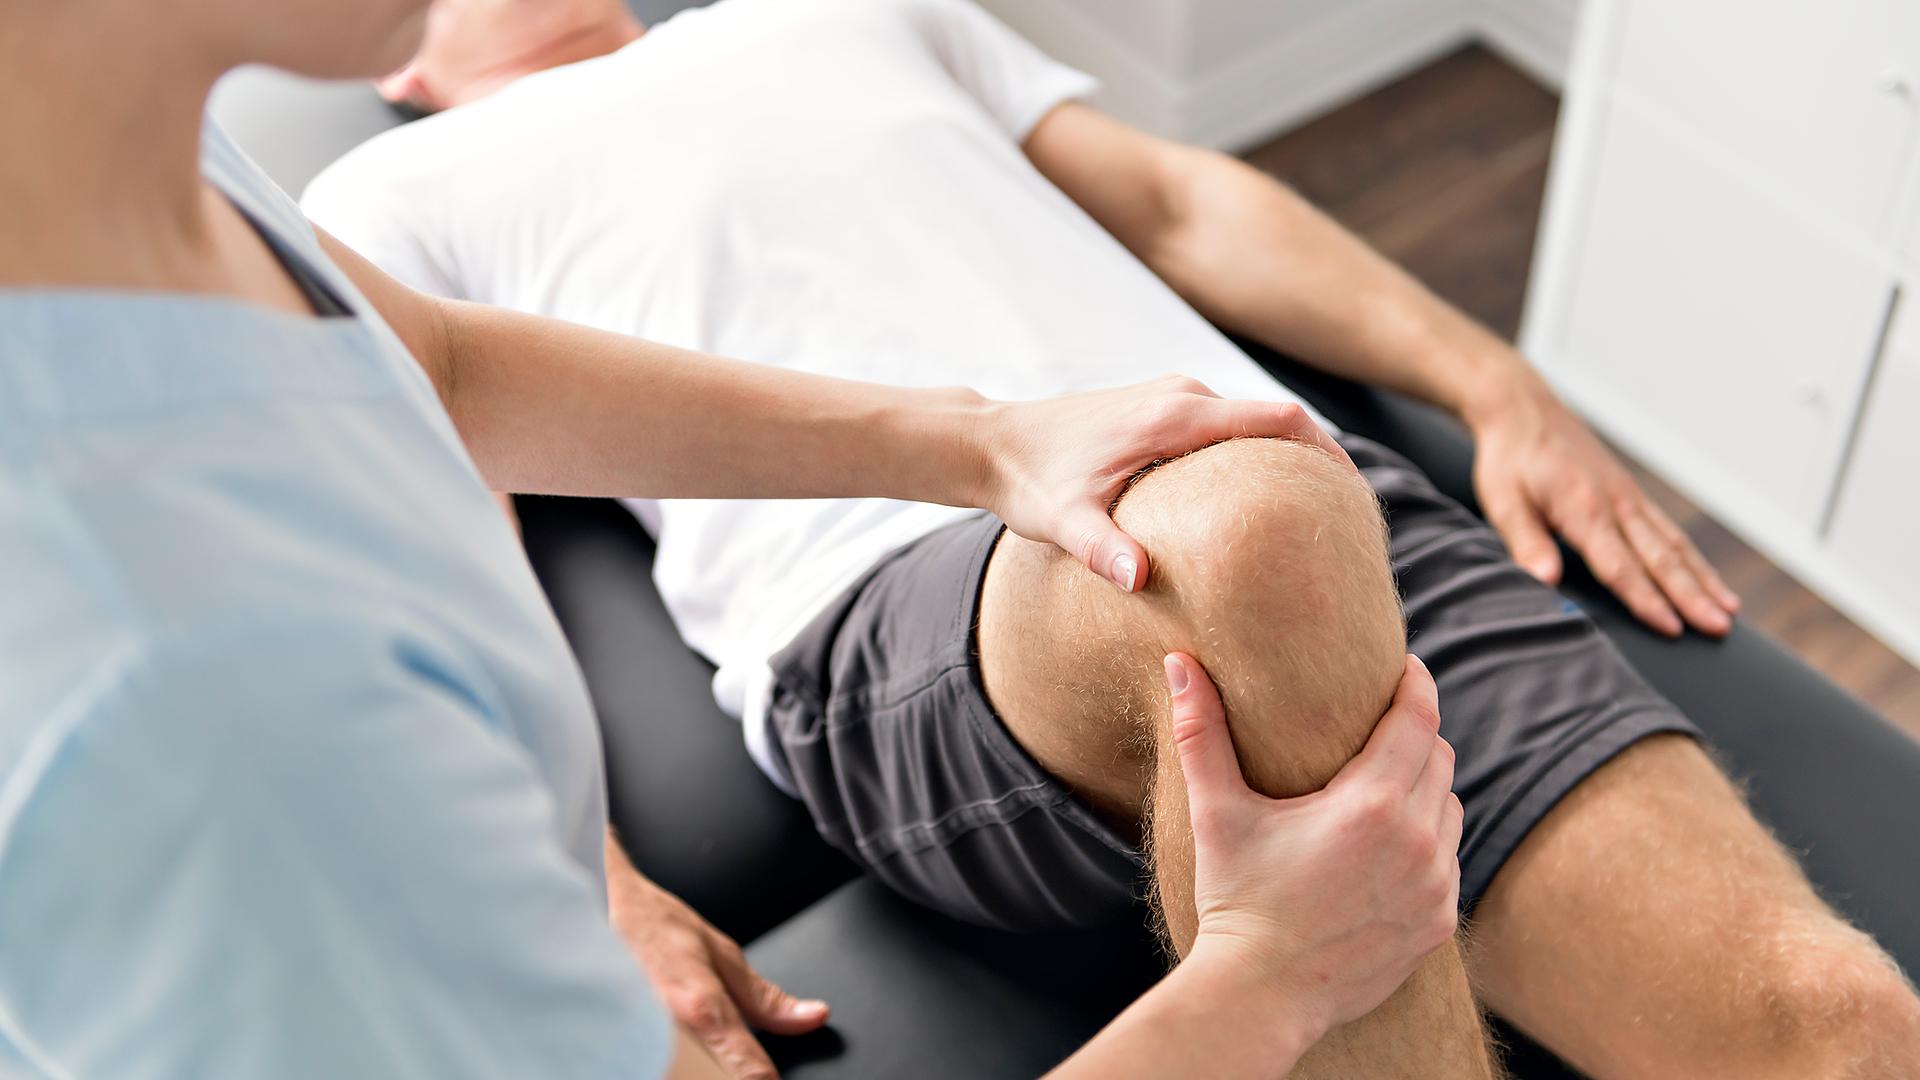 Ein Patient liegt auf einem Behandlungstisch und wird von einer Physiotherapeutin am Knie behandelt.